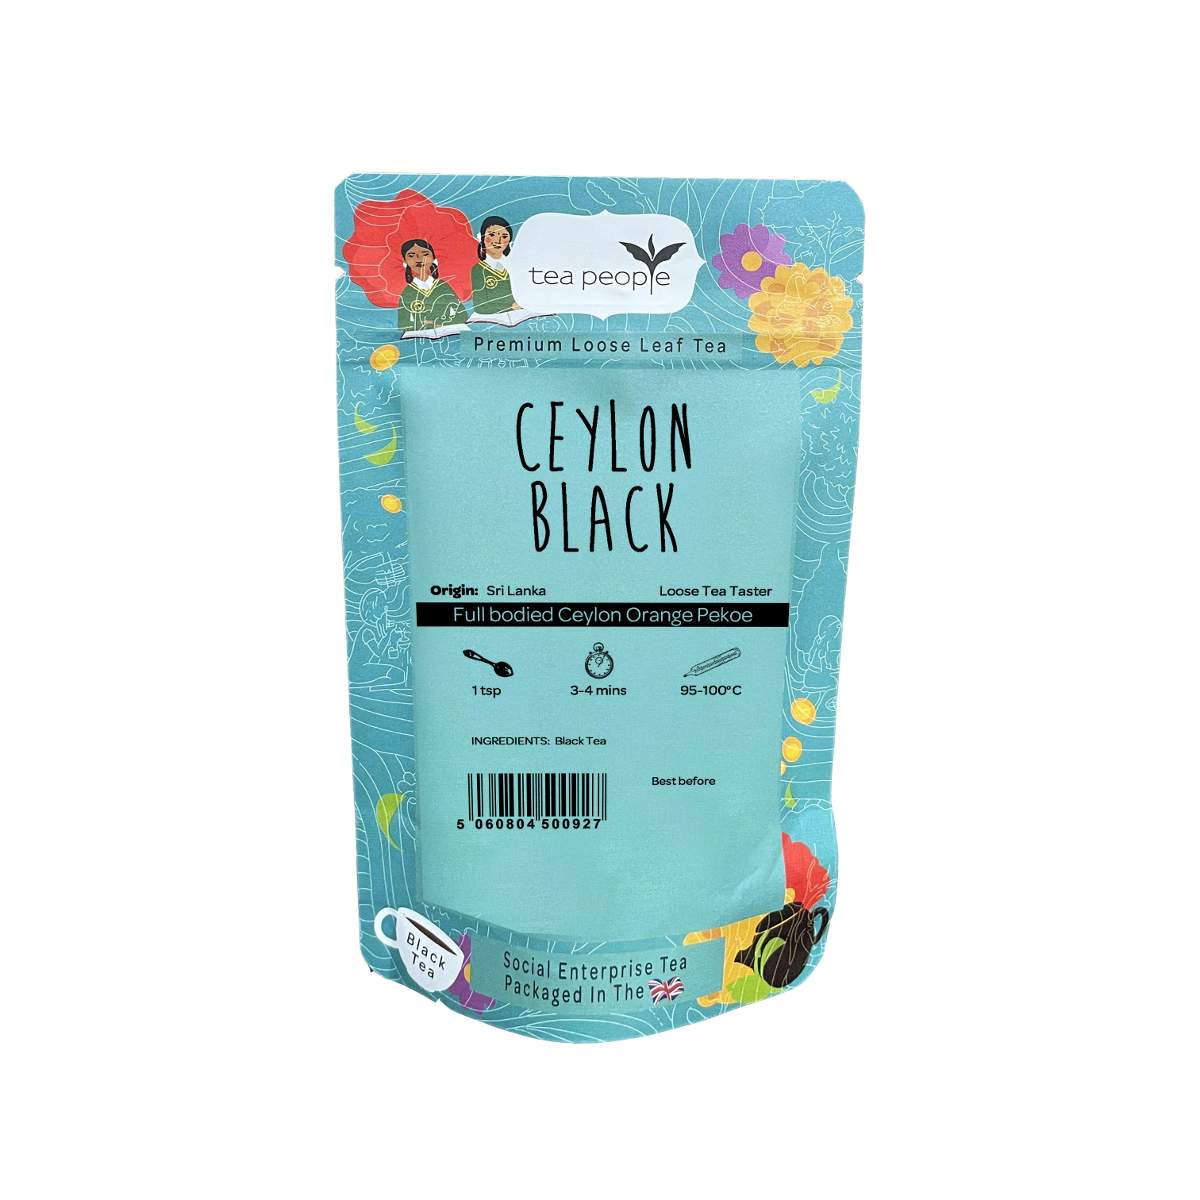 Ceylon Black - Loose Black Tea - Loose Tea Taster Pack